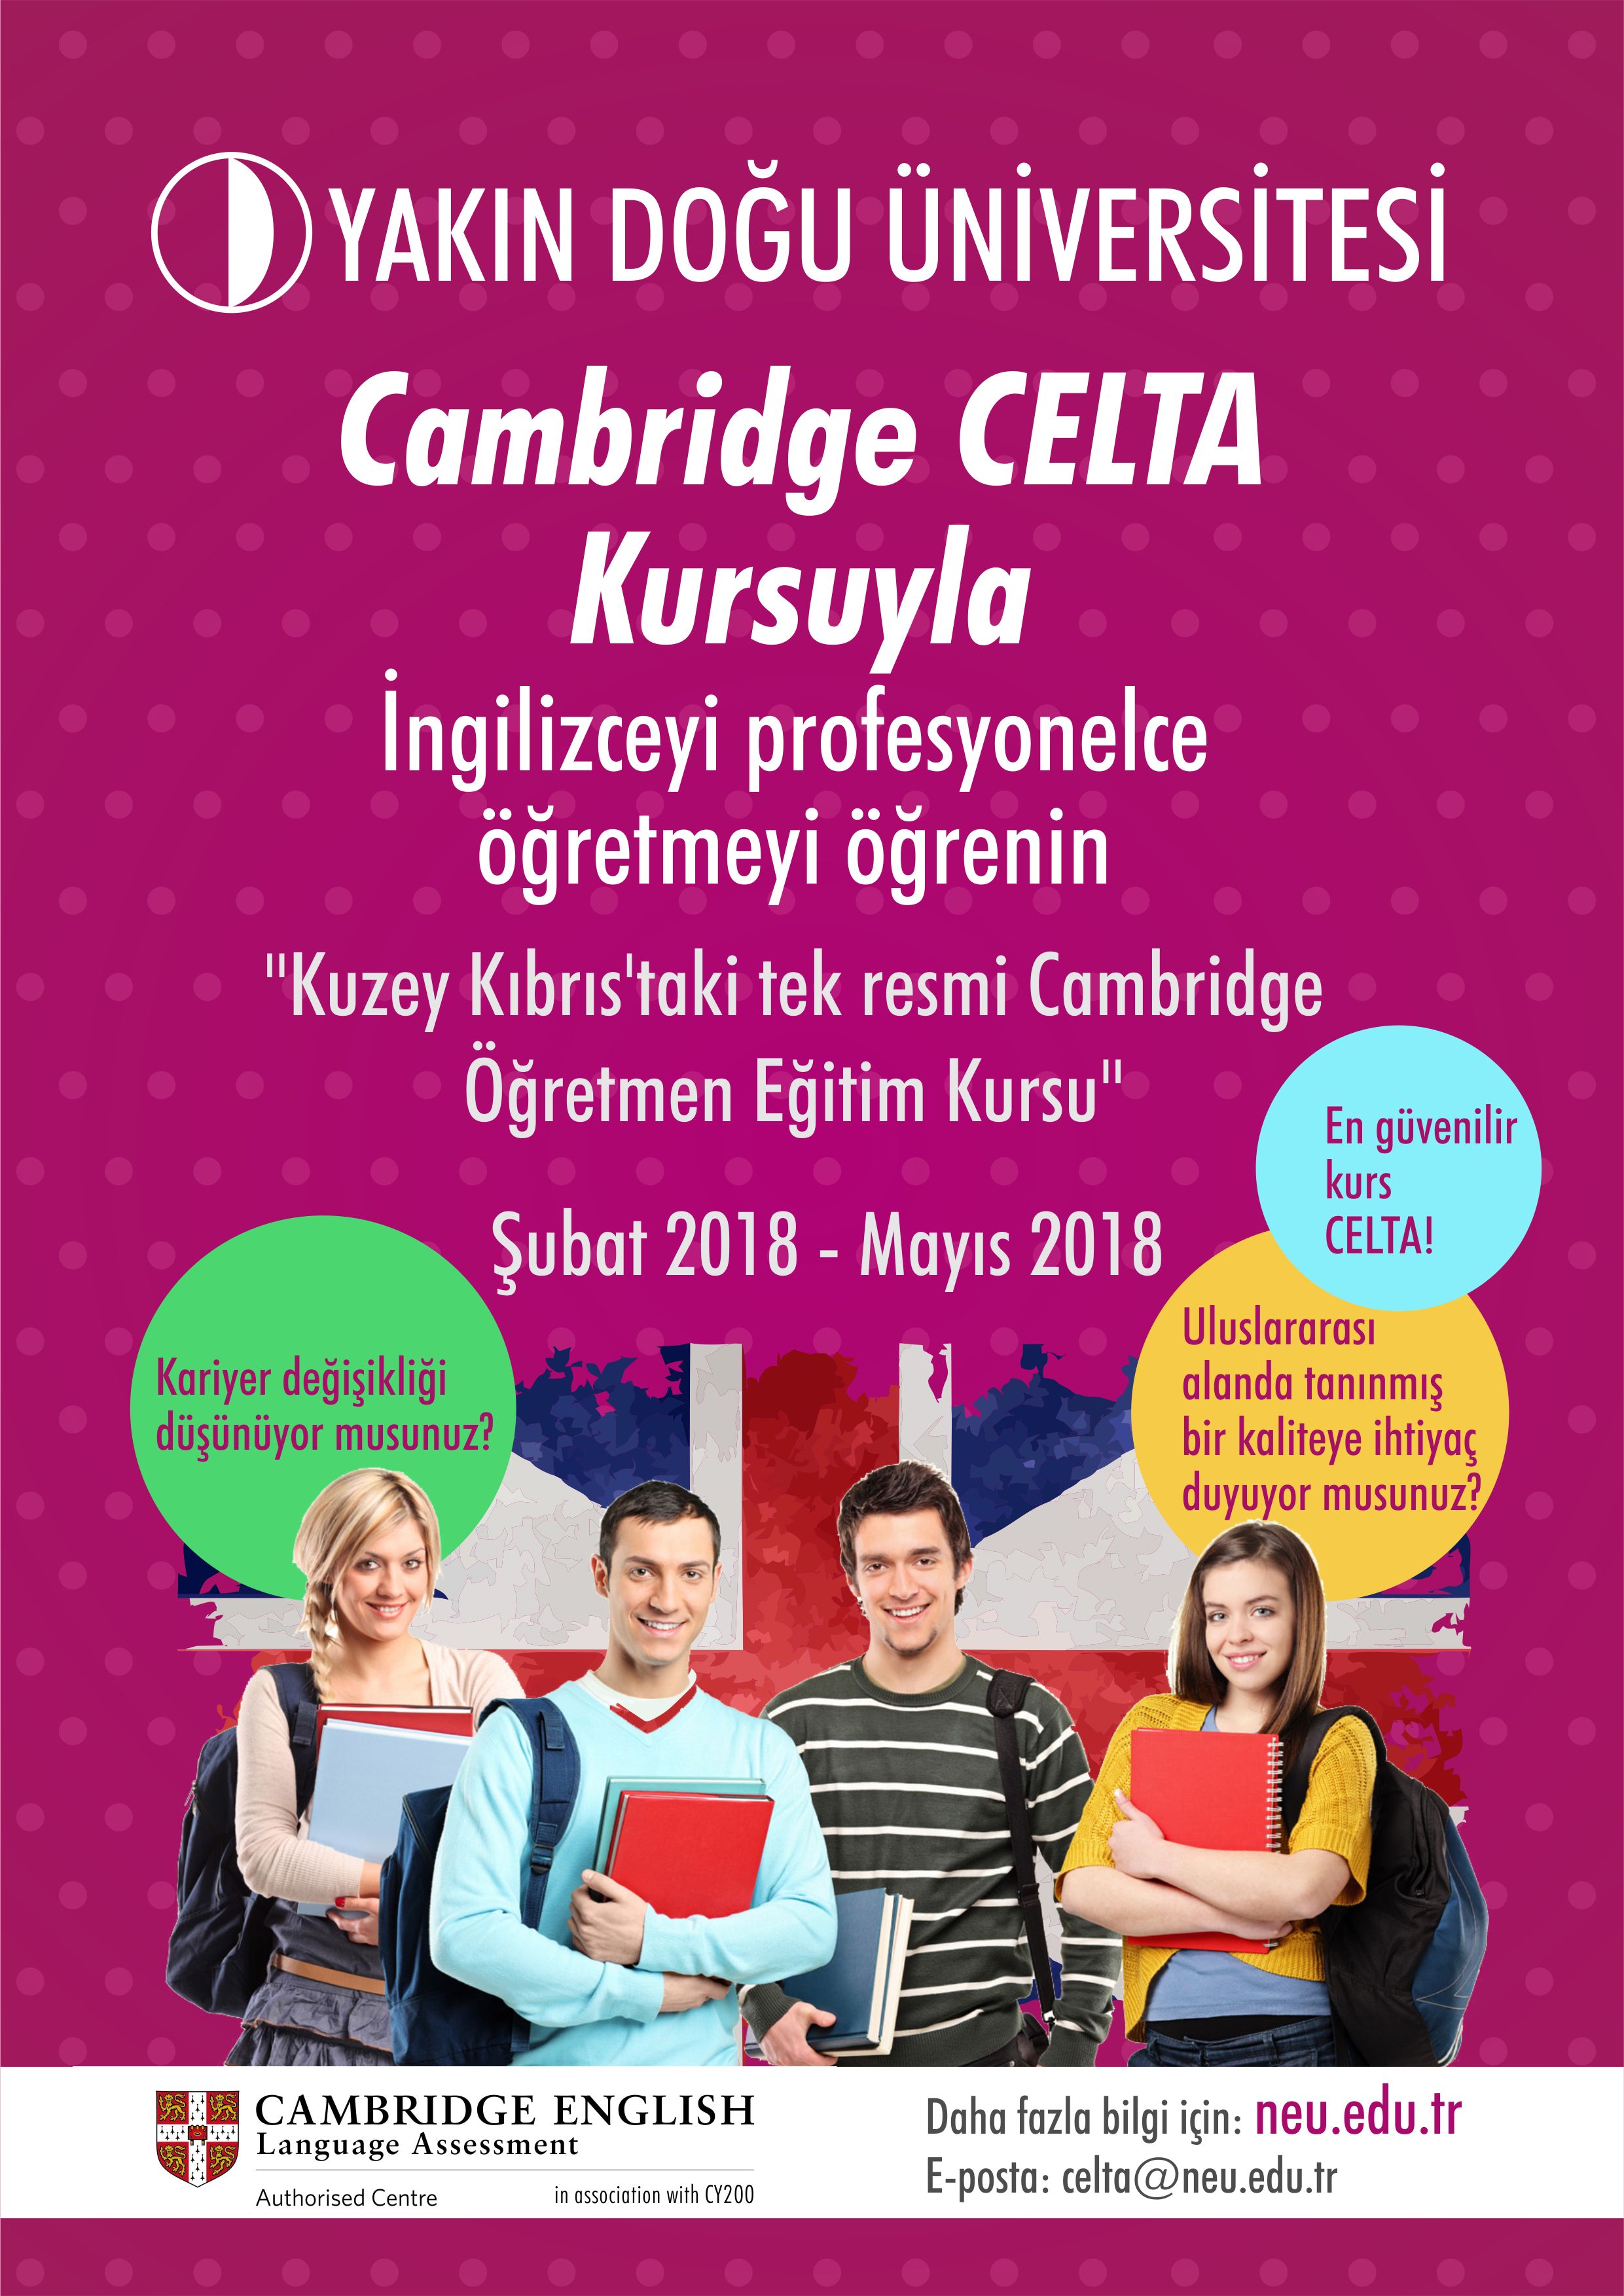 Yakın Doğu Üniversitesi’nde, İngilizce Öğretme Sertifikası Programı CELTA Kursu Gerçekleştiriliyor